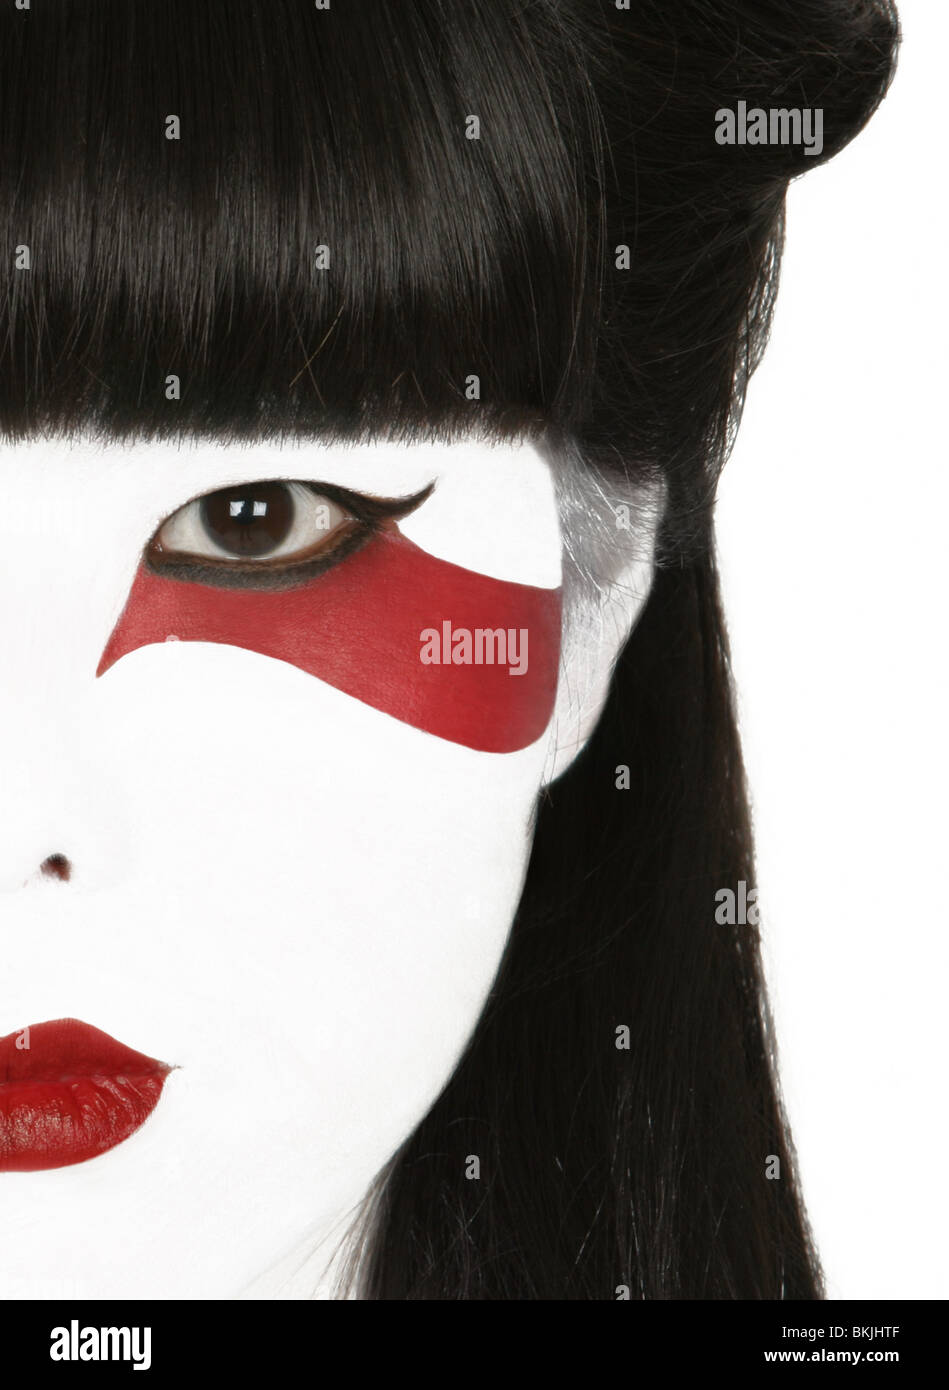 Un high key photographie d'un visage de la fille japonaise avec style geisha composent et une bande rouge stylisée sous l'oeil gauche Banque D'Images